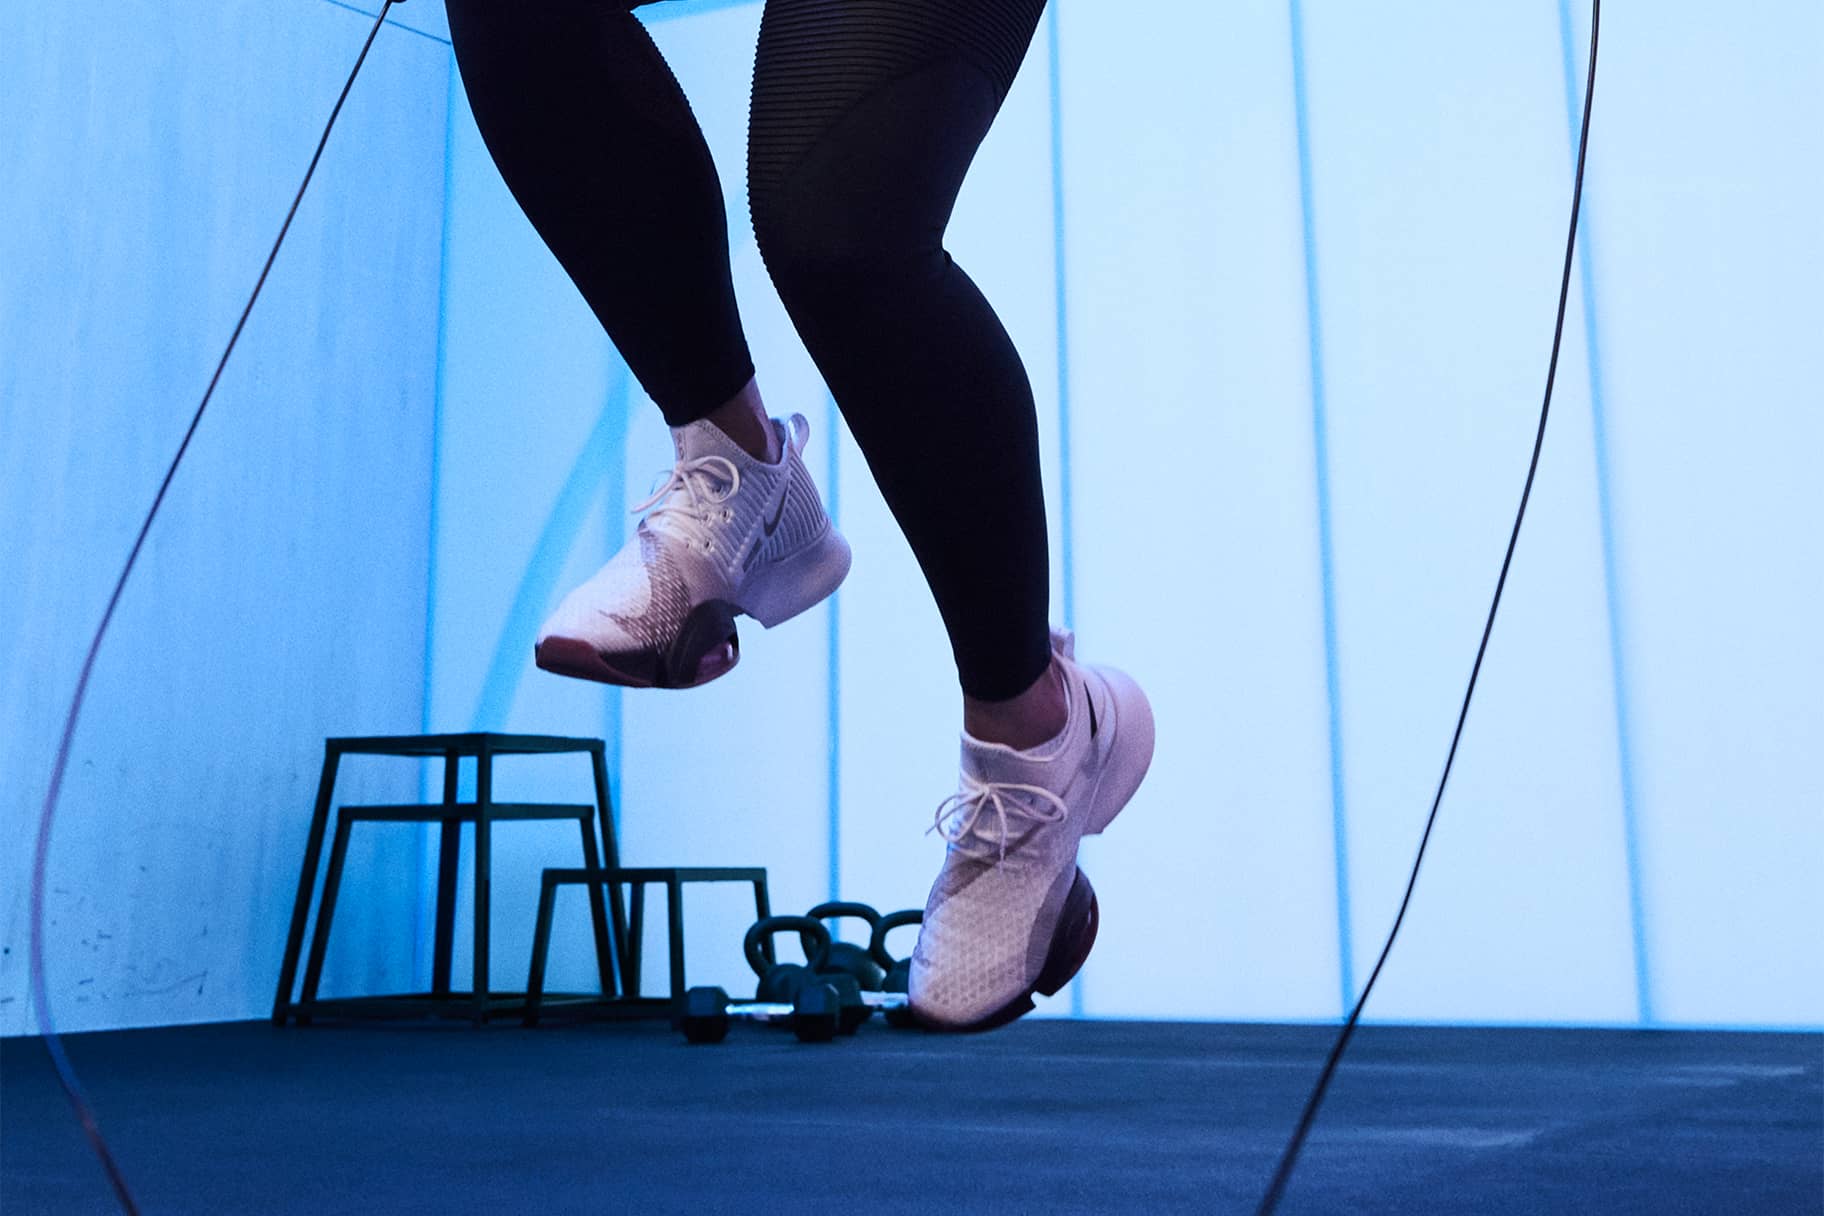 Women's Gym & Training Shoes. Nike.com